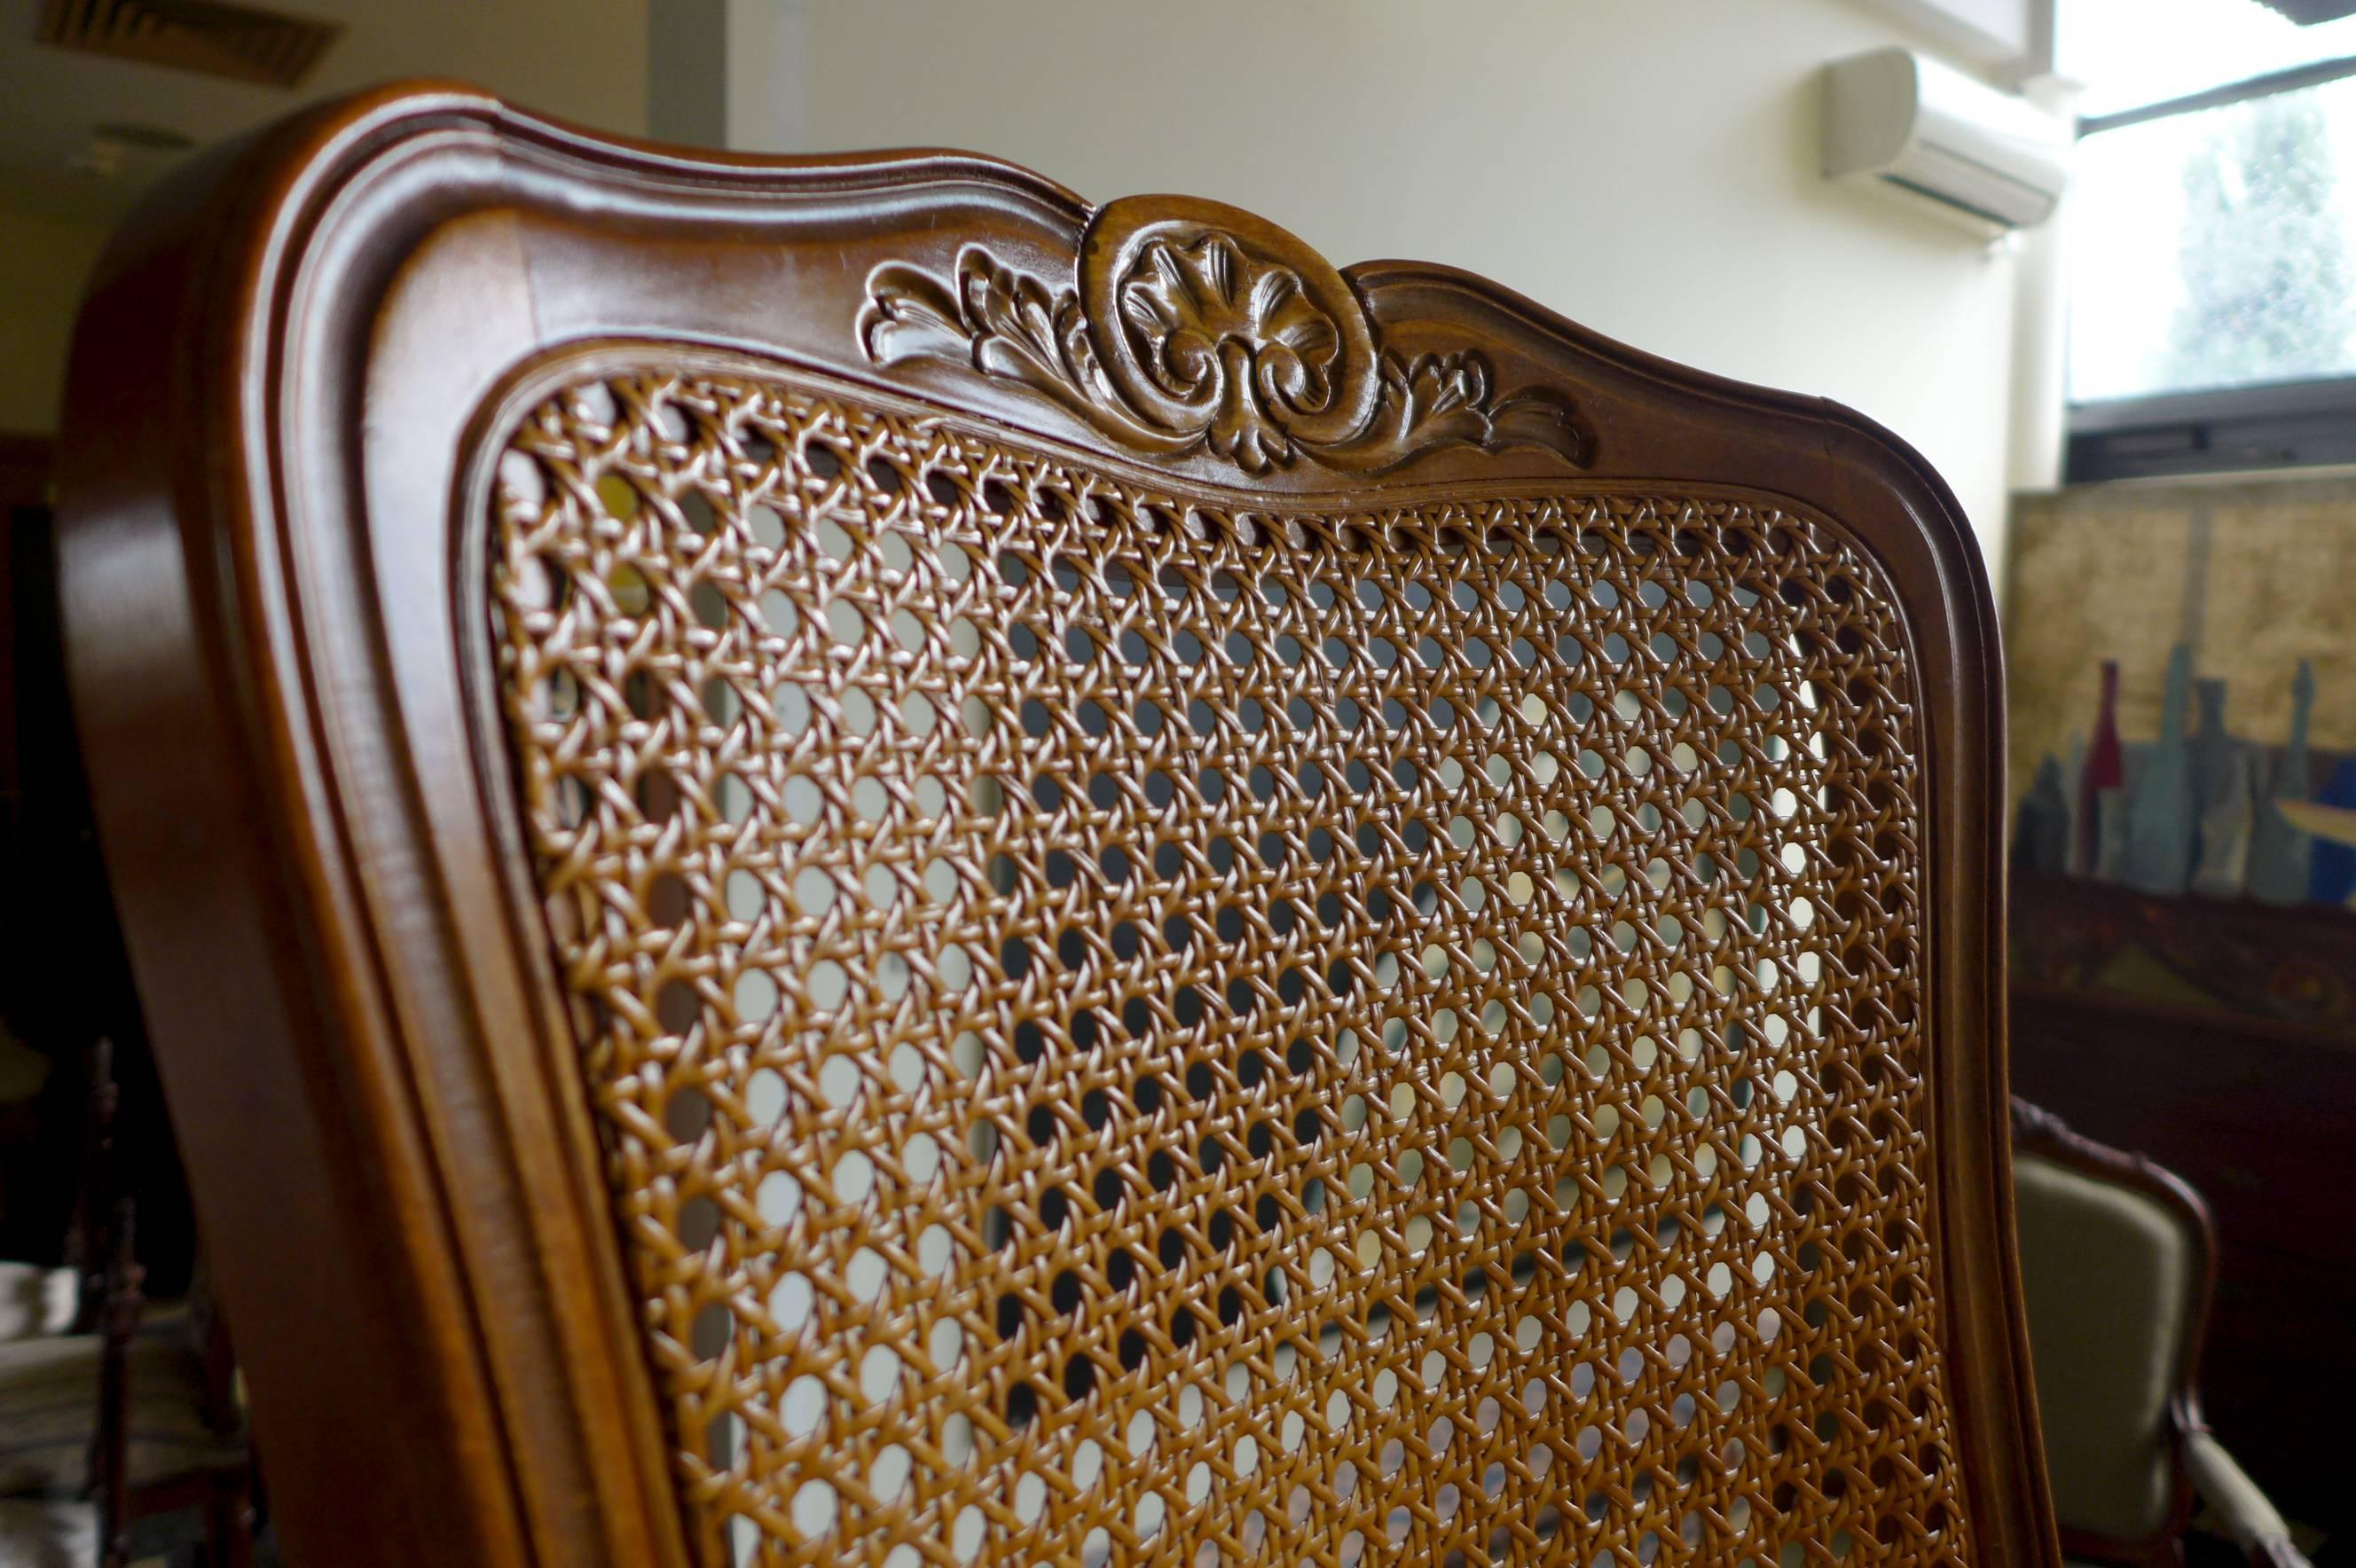 Paire de chaises de salle à manger en noyer sculpté de style Louis XV.
Tous deux avec sièges et dossiers cannelés à la main. Les chaises reposent sur des pieds cabriole avant élégamment sculptés et peuvent être vendues séparément,
France, vers